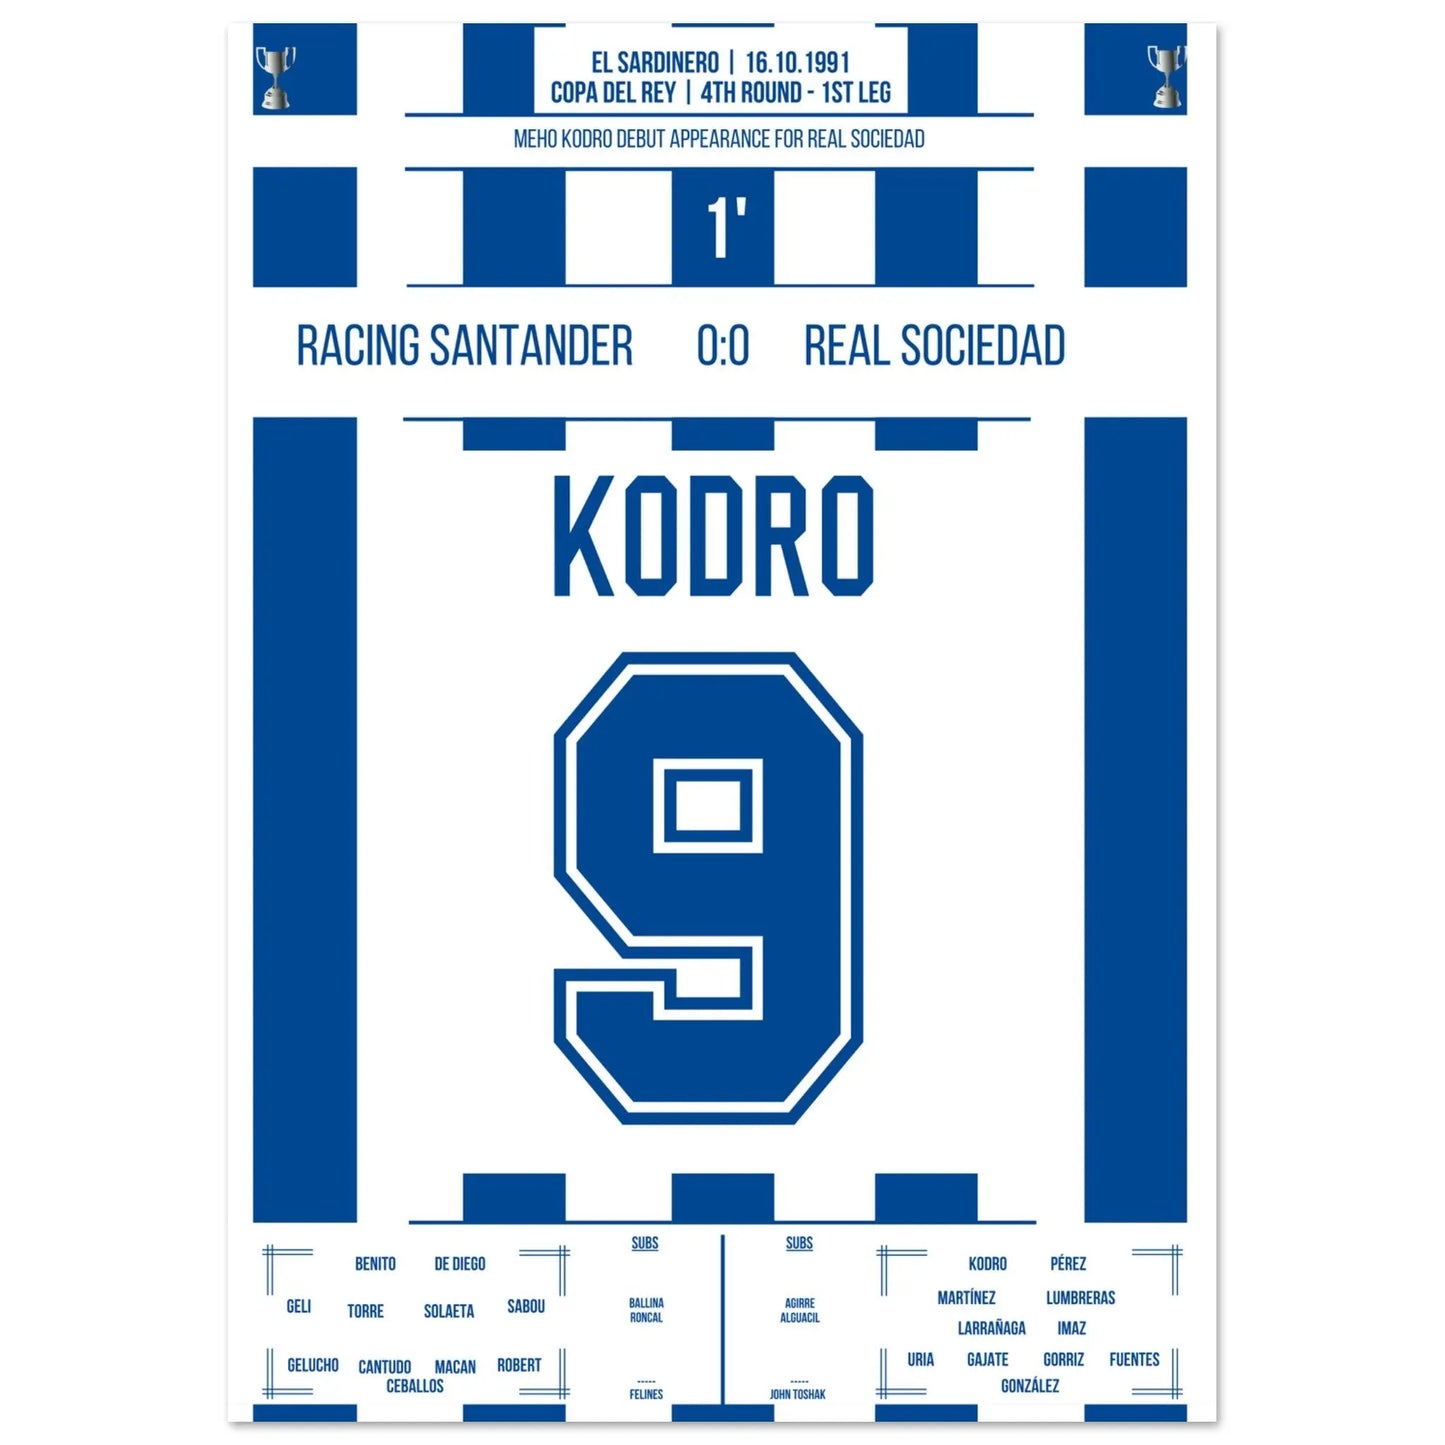 Meho Kodro debuta con la Real Sociedad